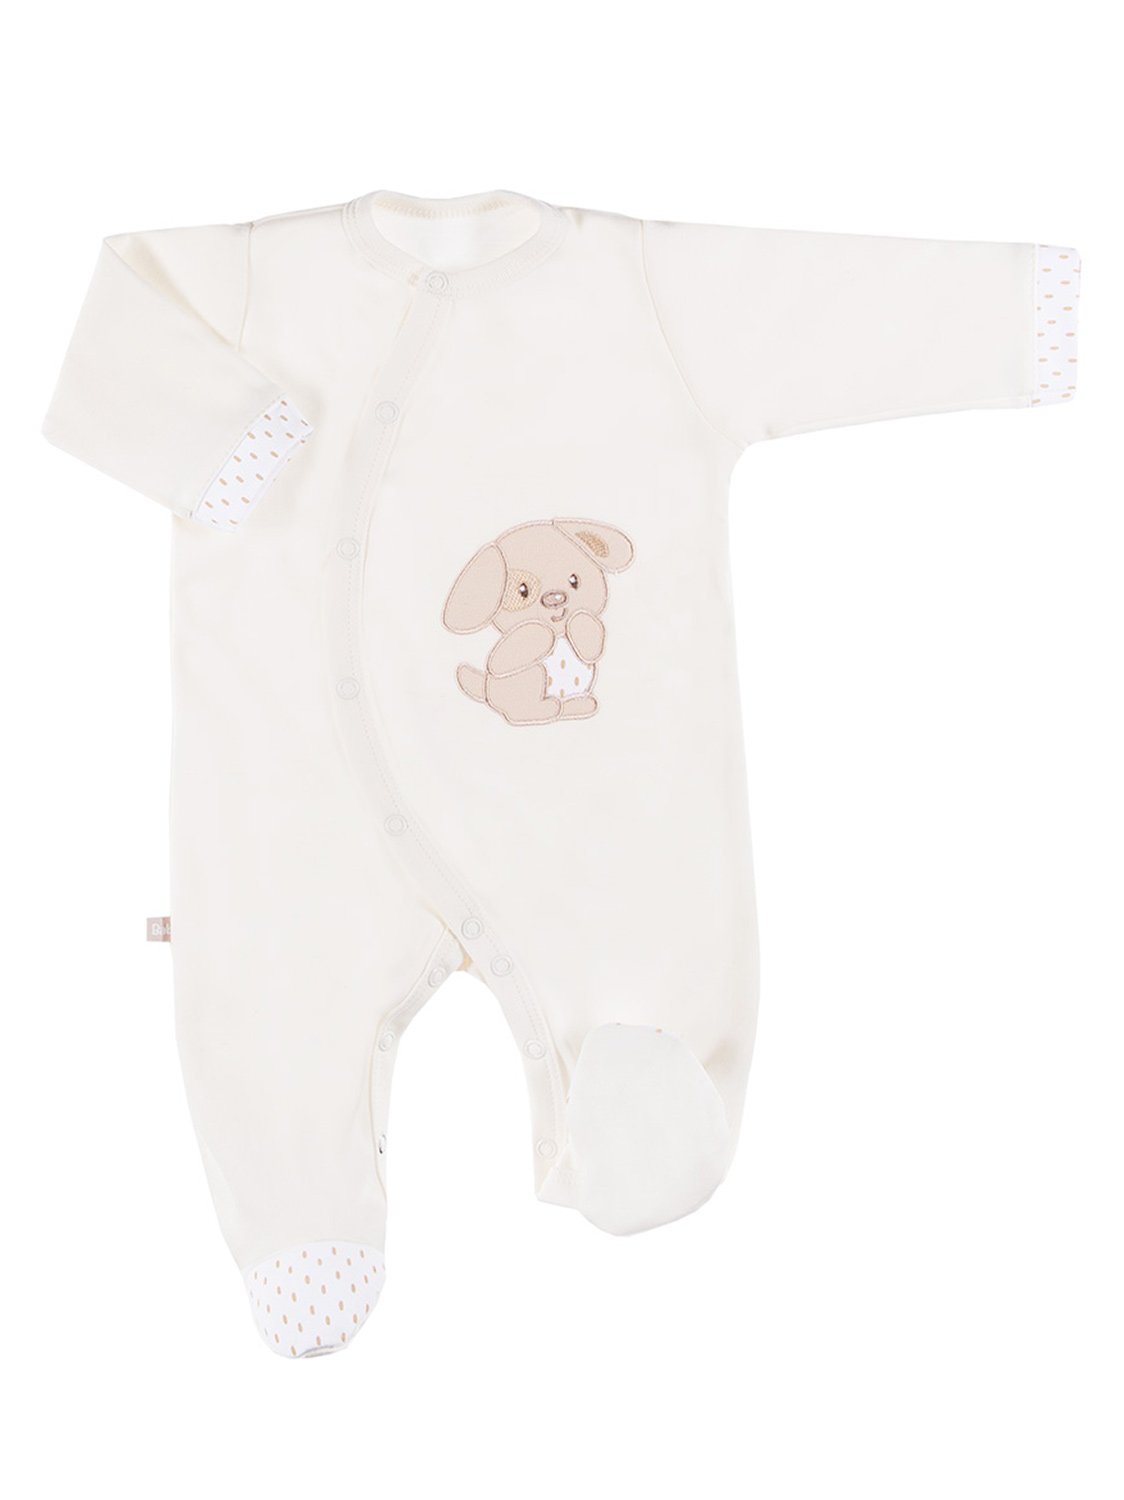 Early Baby Footed Sleepsuit - Puppy, Cream Sleepsuit / Babygrow EEVI 